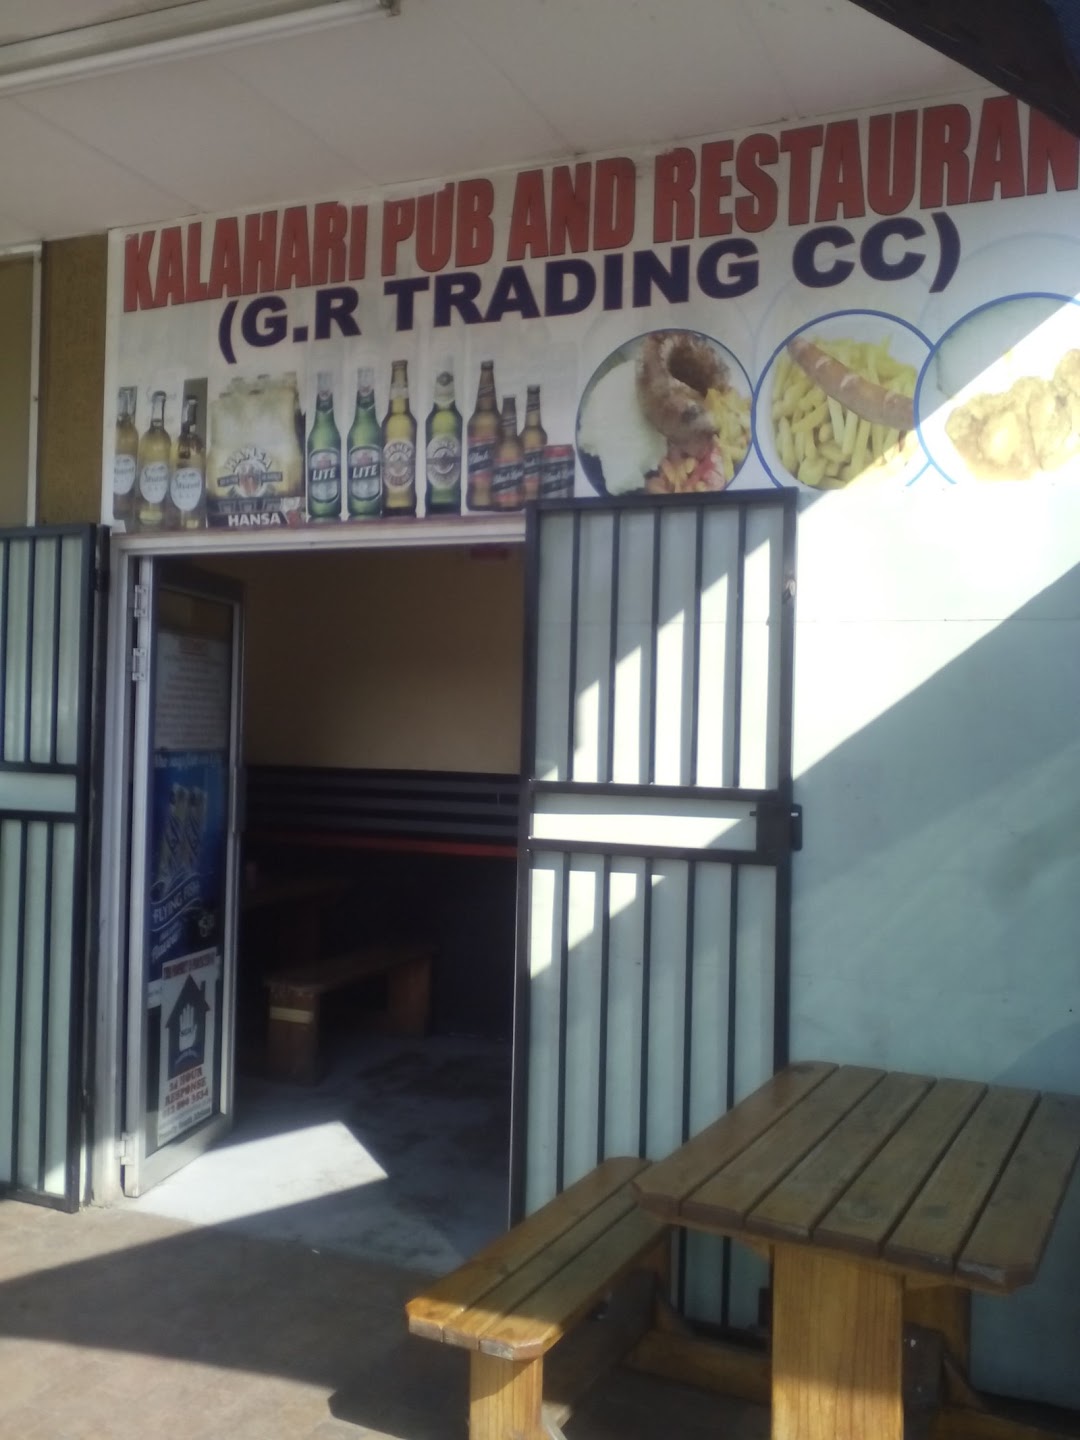 Kalahari Pub And Restaurant